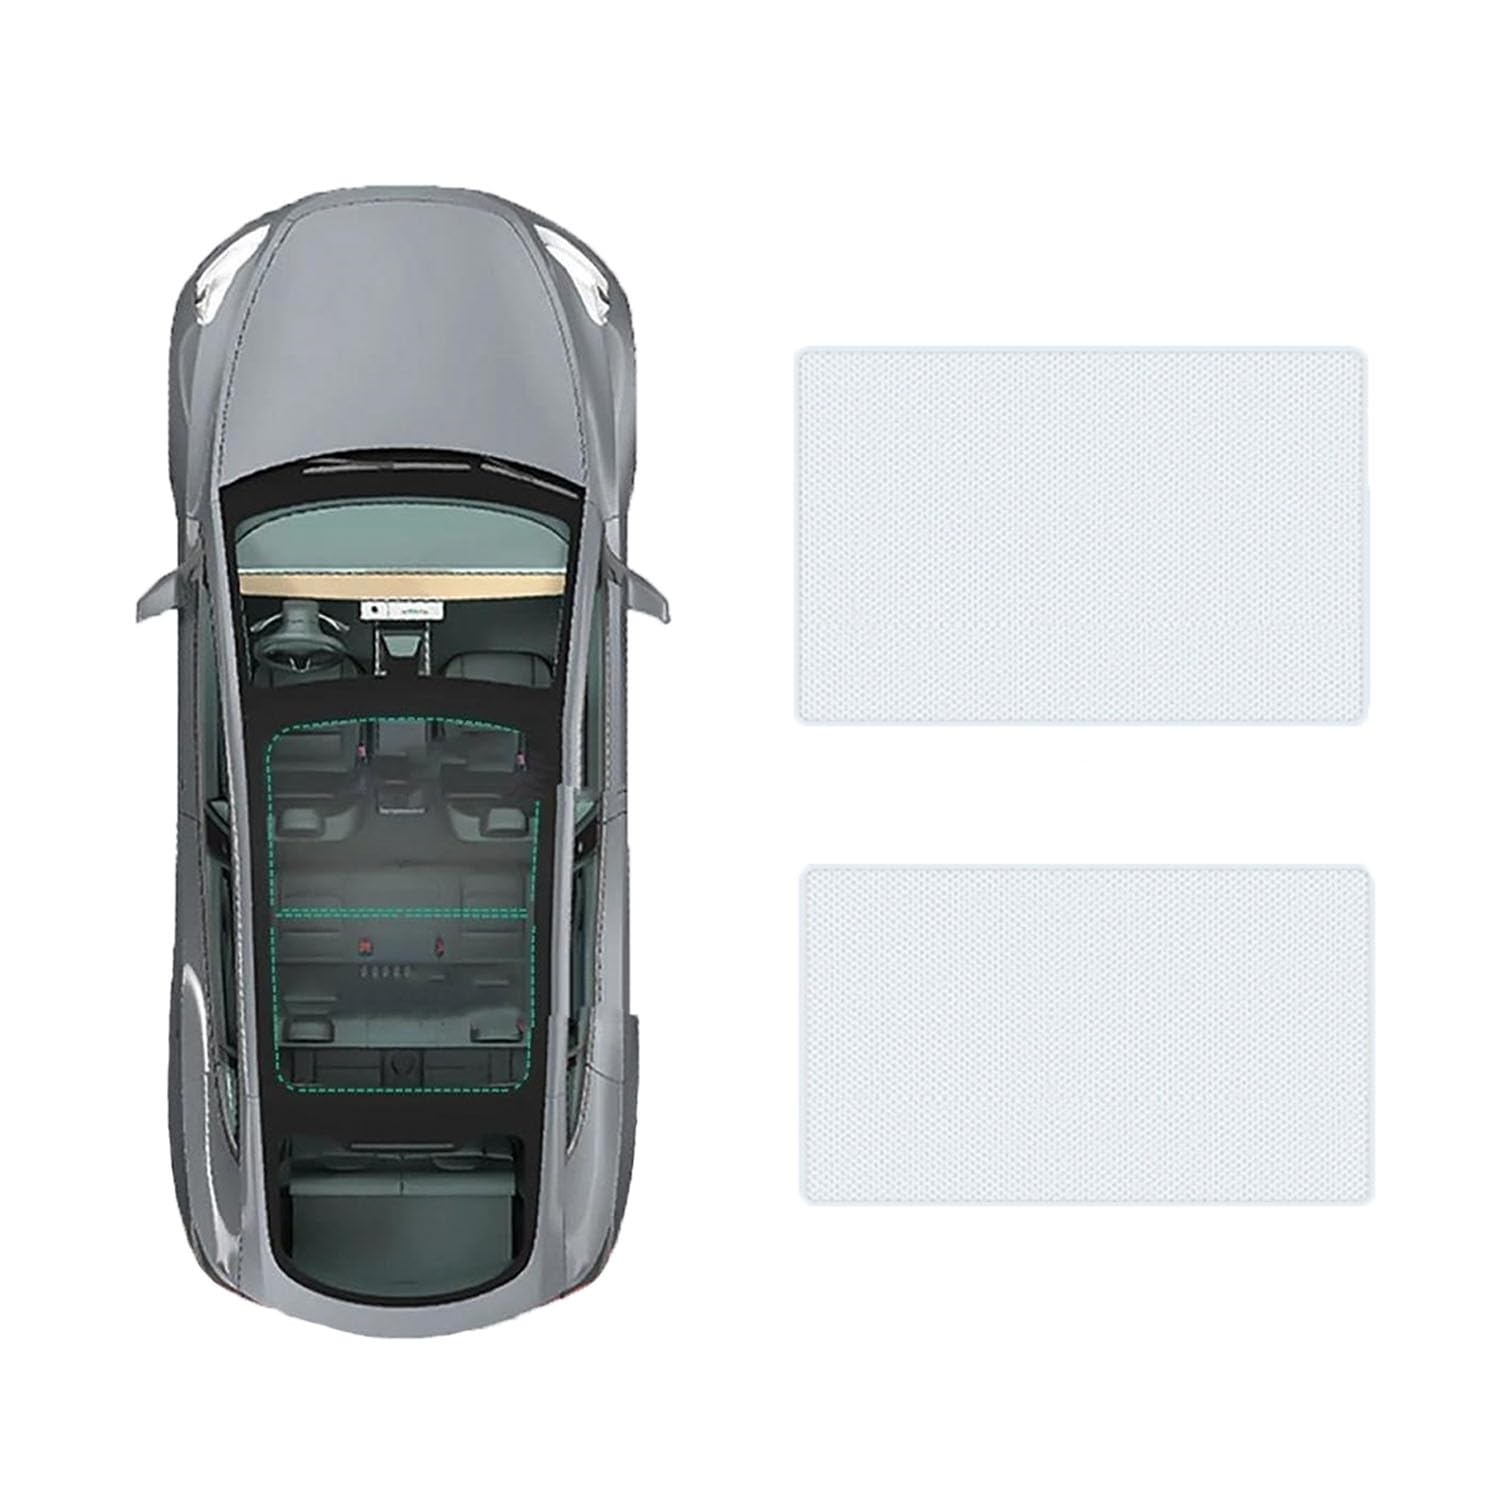 Auto Schiebedach Sonnenschirm Vorhang Für VW golf variant 2010-,UV-Schutz Schattierung vorne Heckscheibe Sonnenschutz,A-Gray white regular Style von JiAQen